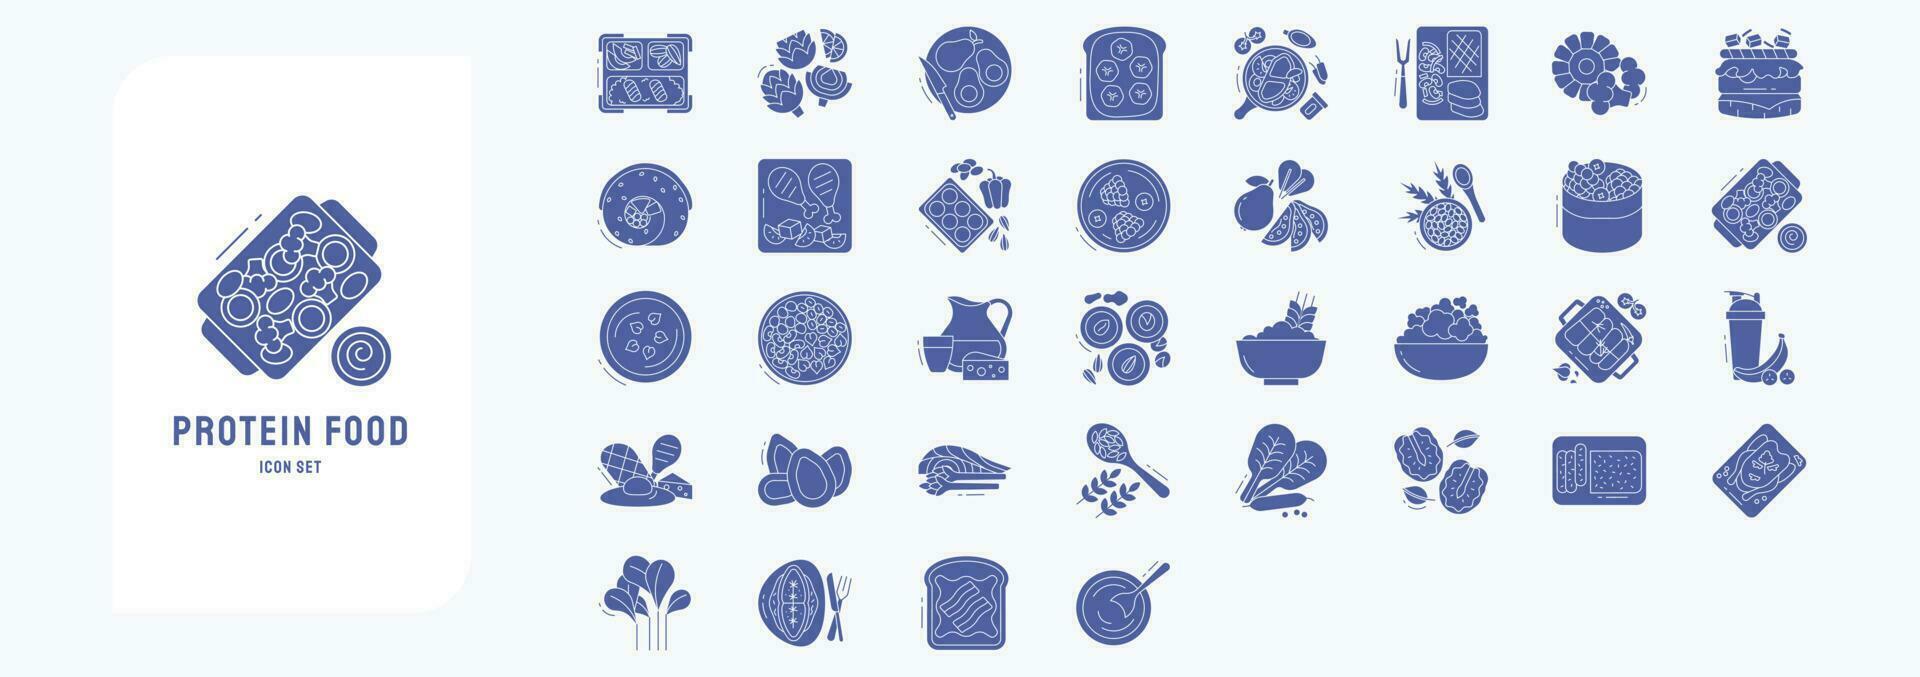 colección de íconos relacionado a proteína comida , incluso íconos me gusta palta, tostada, frutas y más vector